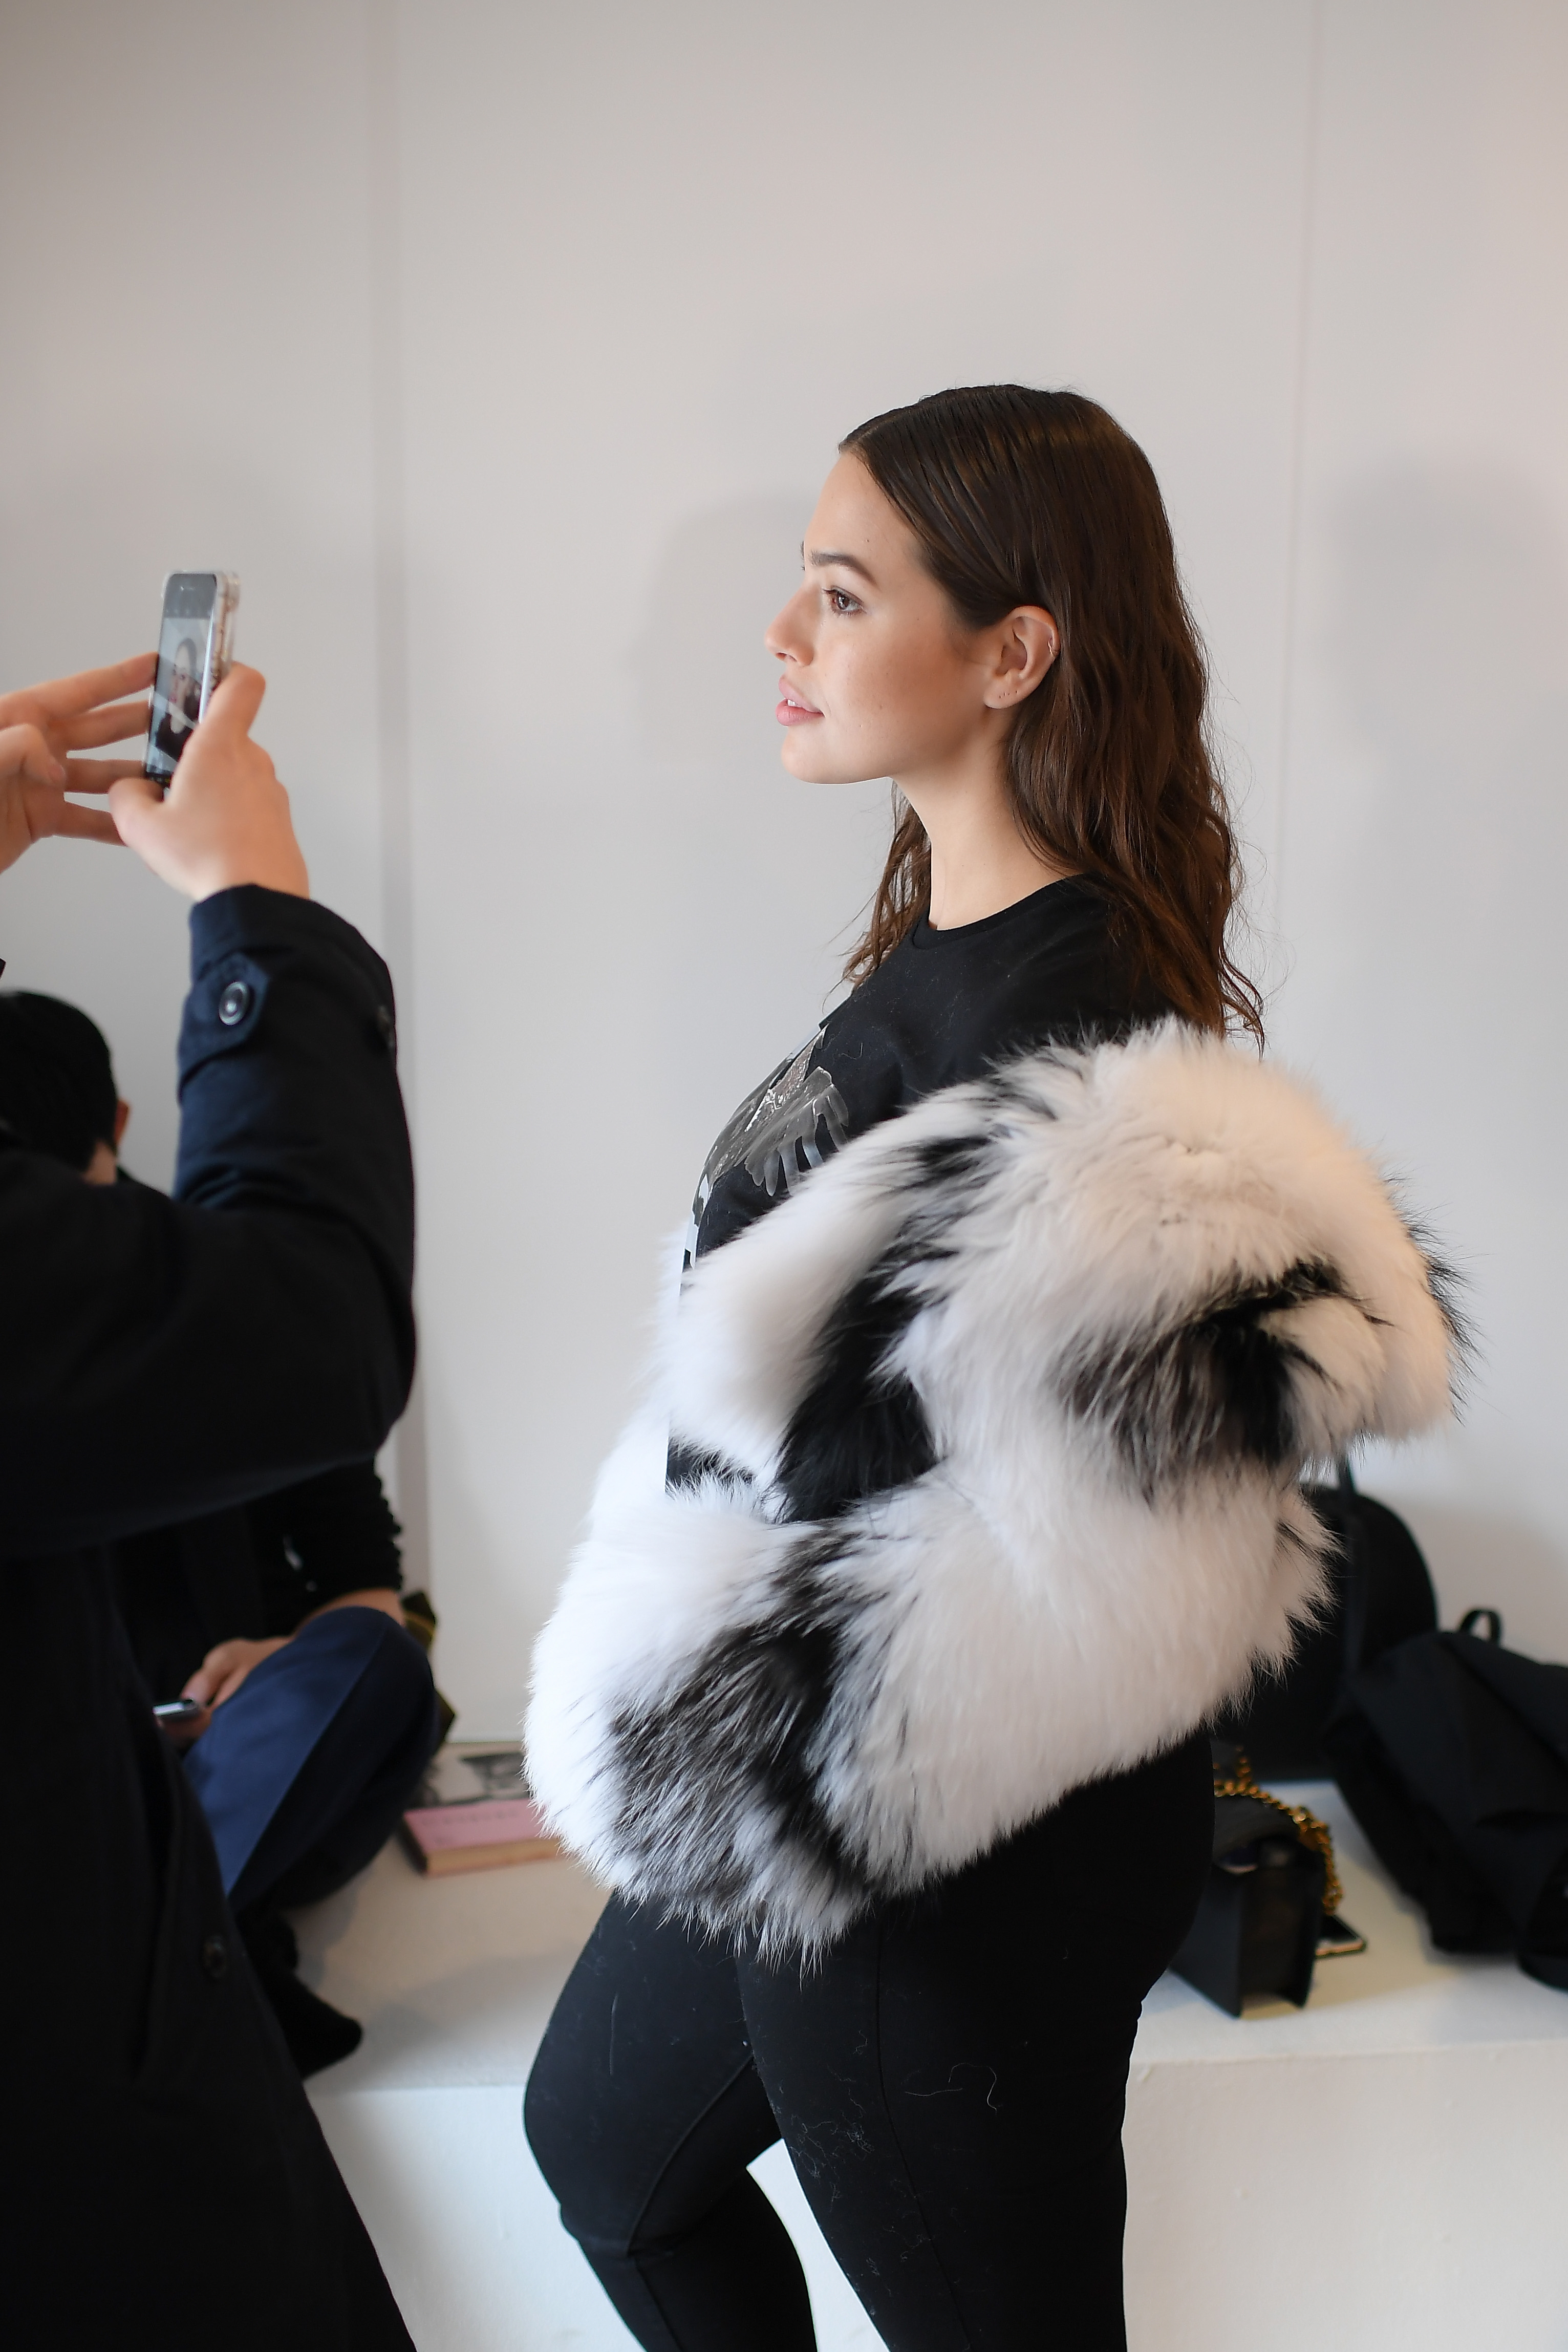 За представянето на колекцията си есен-зима на Седмицата на модата в Ню Йорк дизайнерът Майкъл Корс нае plus-size модела Ашли Греъм, която носи дрехи 54 размер. Тя се появи с черна рокля с цепка до коляното, допълнена с широк черен колан. Пищната манекенка има повече от 3 милиона последователи в социалната мрежа Instagram.